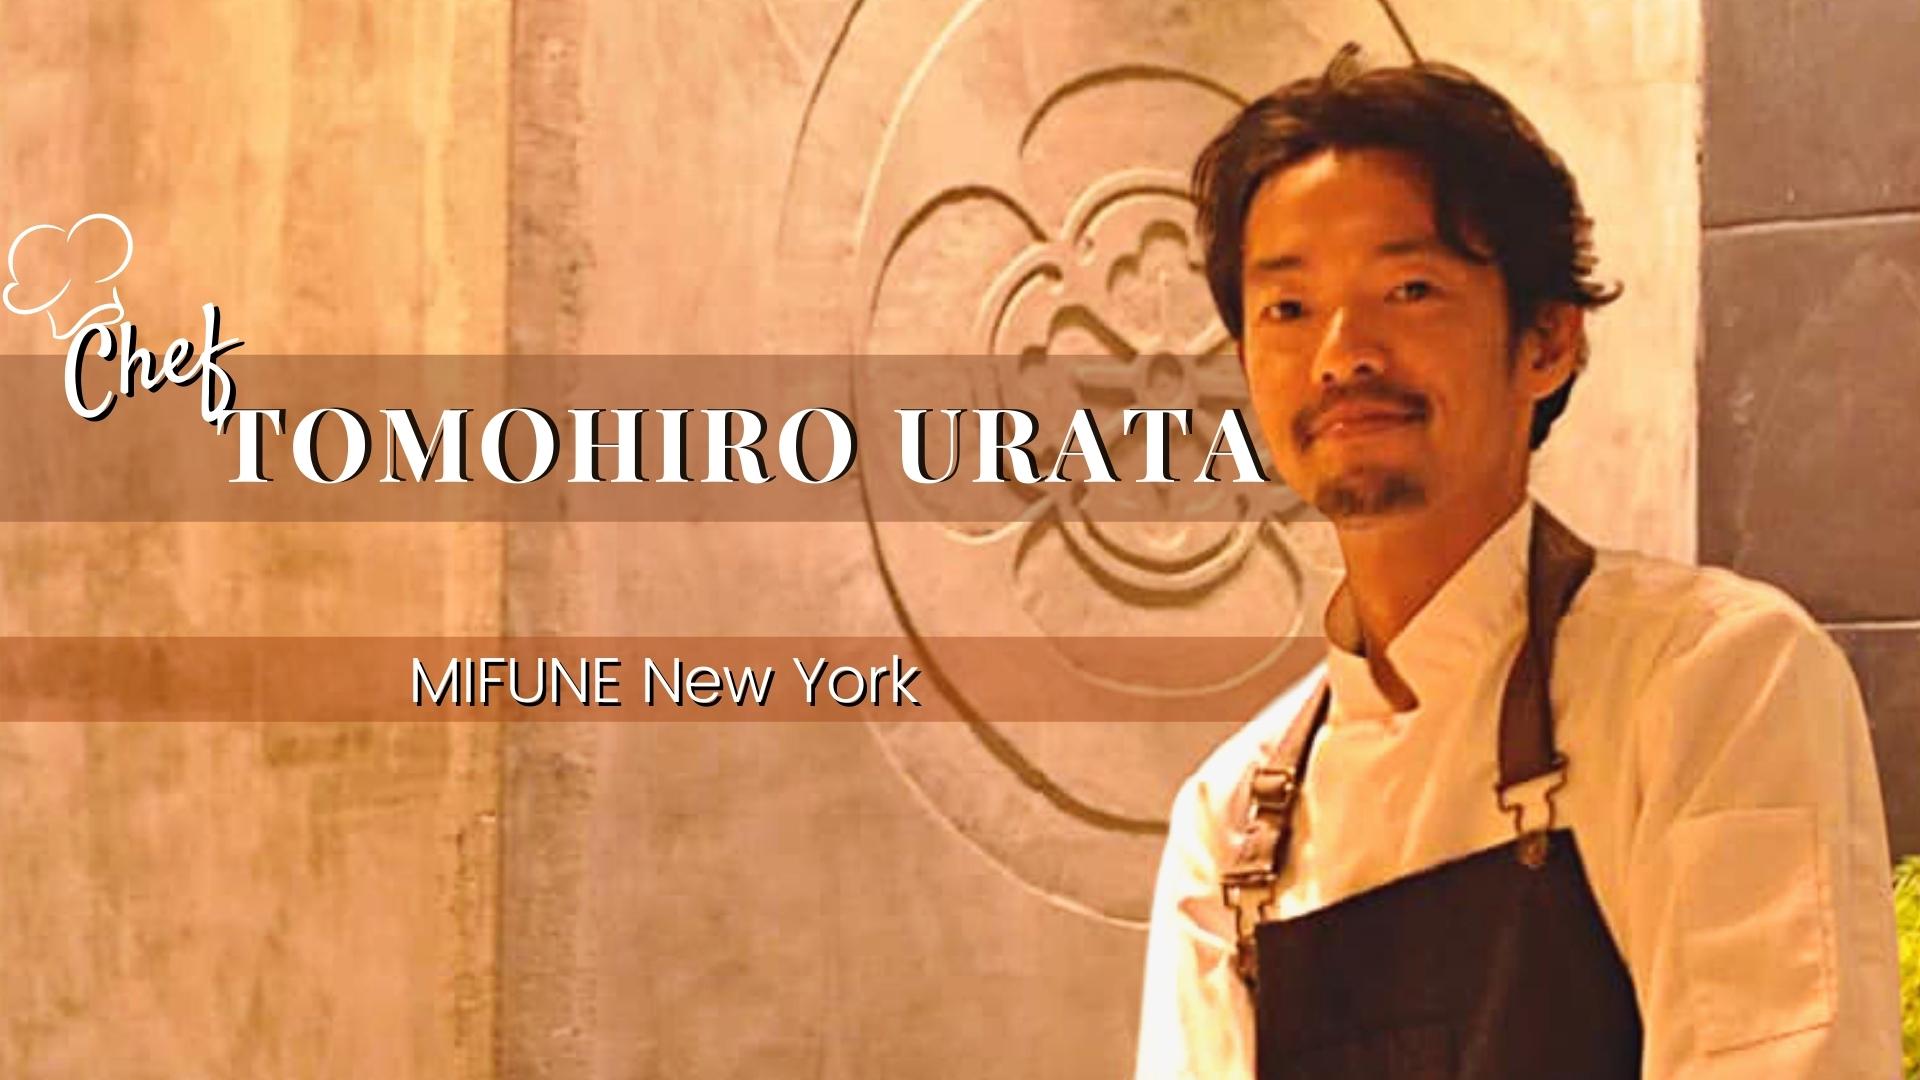 Syosaku-Japan Brand Aficionado - Chef Tomo Urata